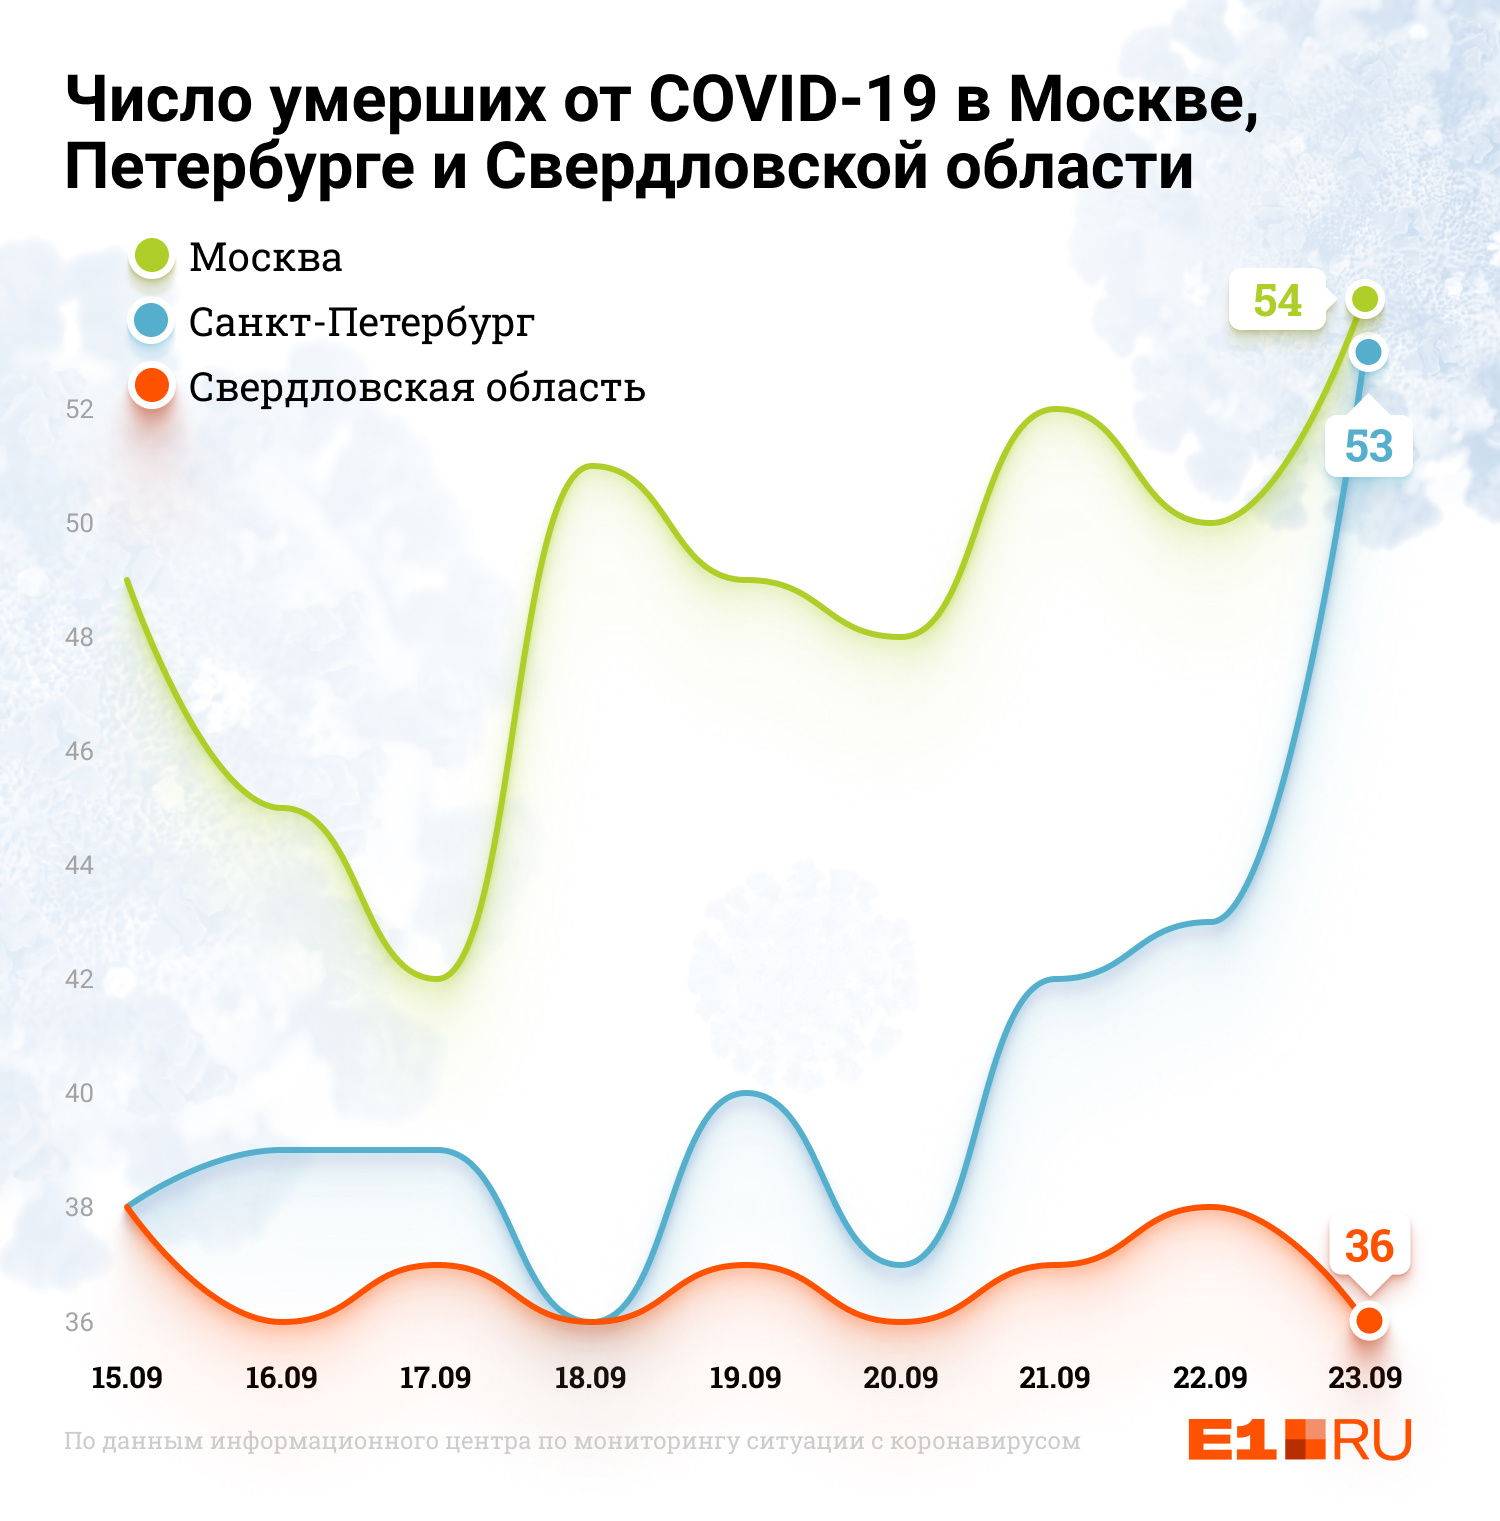 Чего нельзя сказать о числе летальных исходов после COVID-19: здесь превышения показателя в несколько раз у Москвы и Питера нет